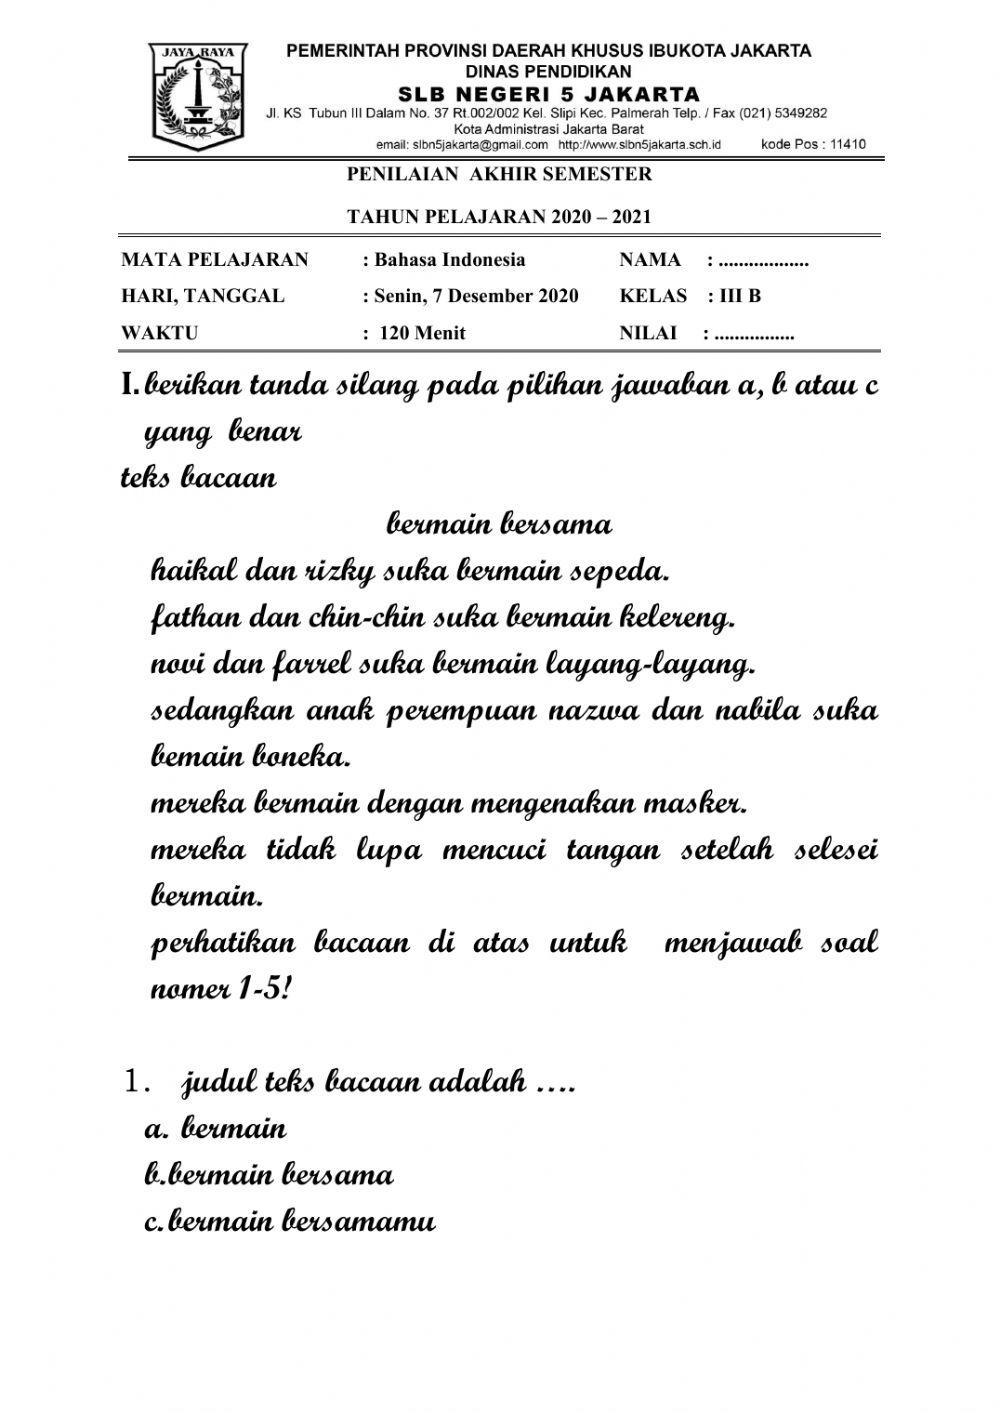 Penilaian Akhir Semester Bahasa Indonesia